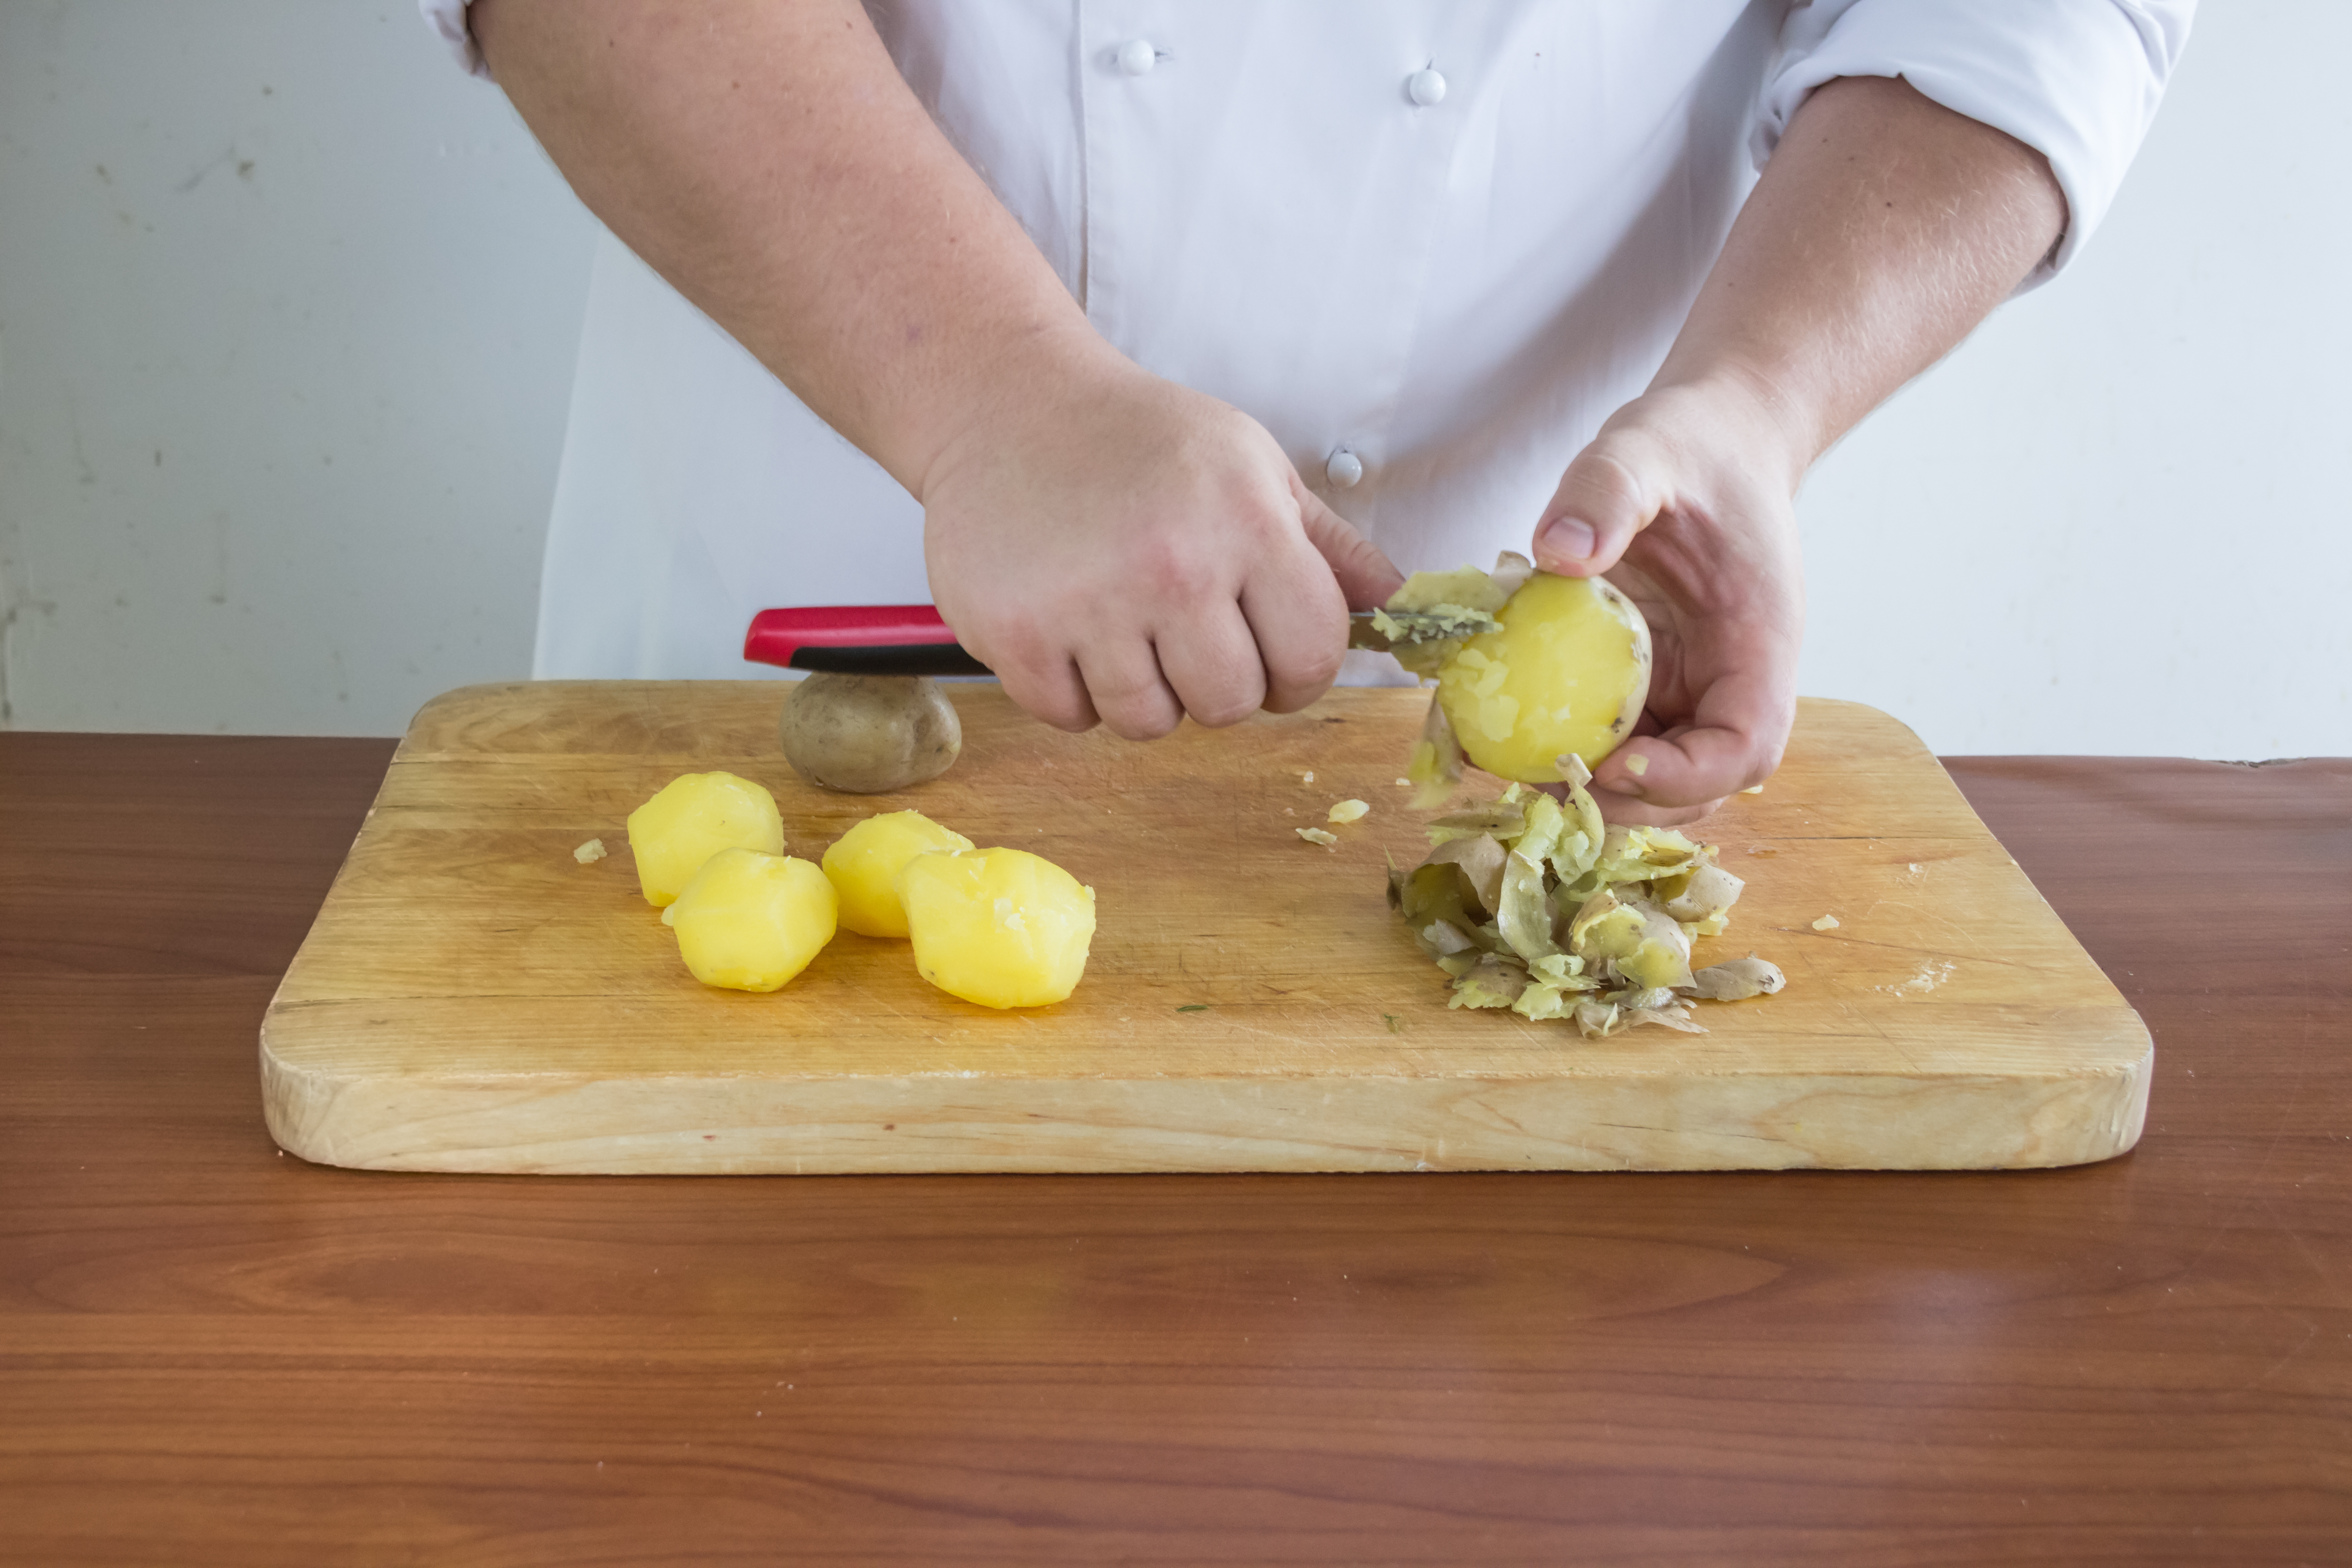 Картофель для оливье сварите в мундире, остудите, очистите, нарежьте кубиками 1х1 см. Сварите яйца вкрутую, остудите под струей холодной воды, очистите и порубите. Два желтка отложите для украшения.